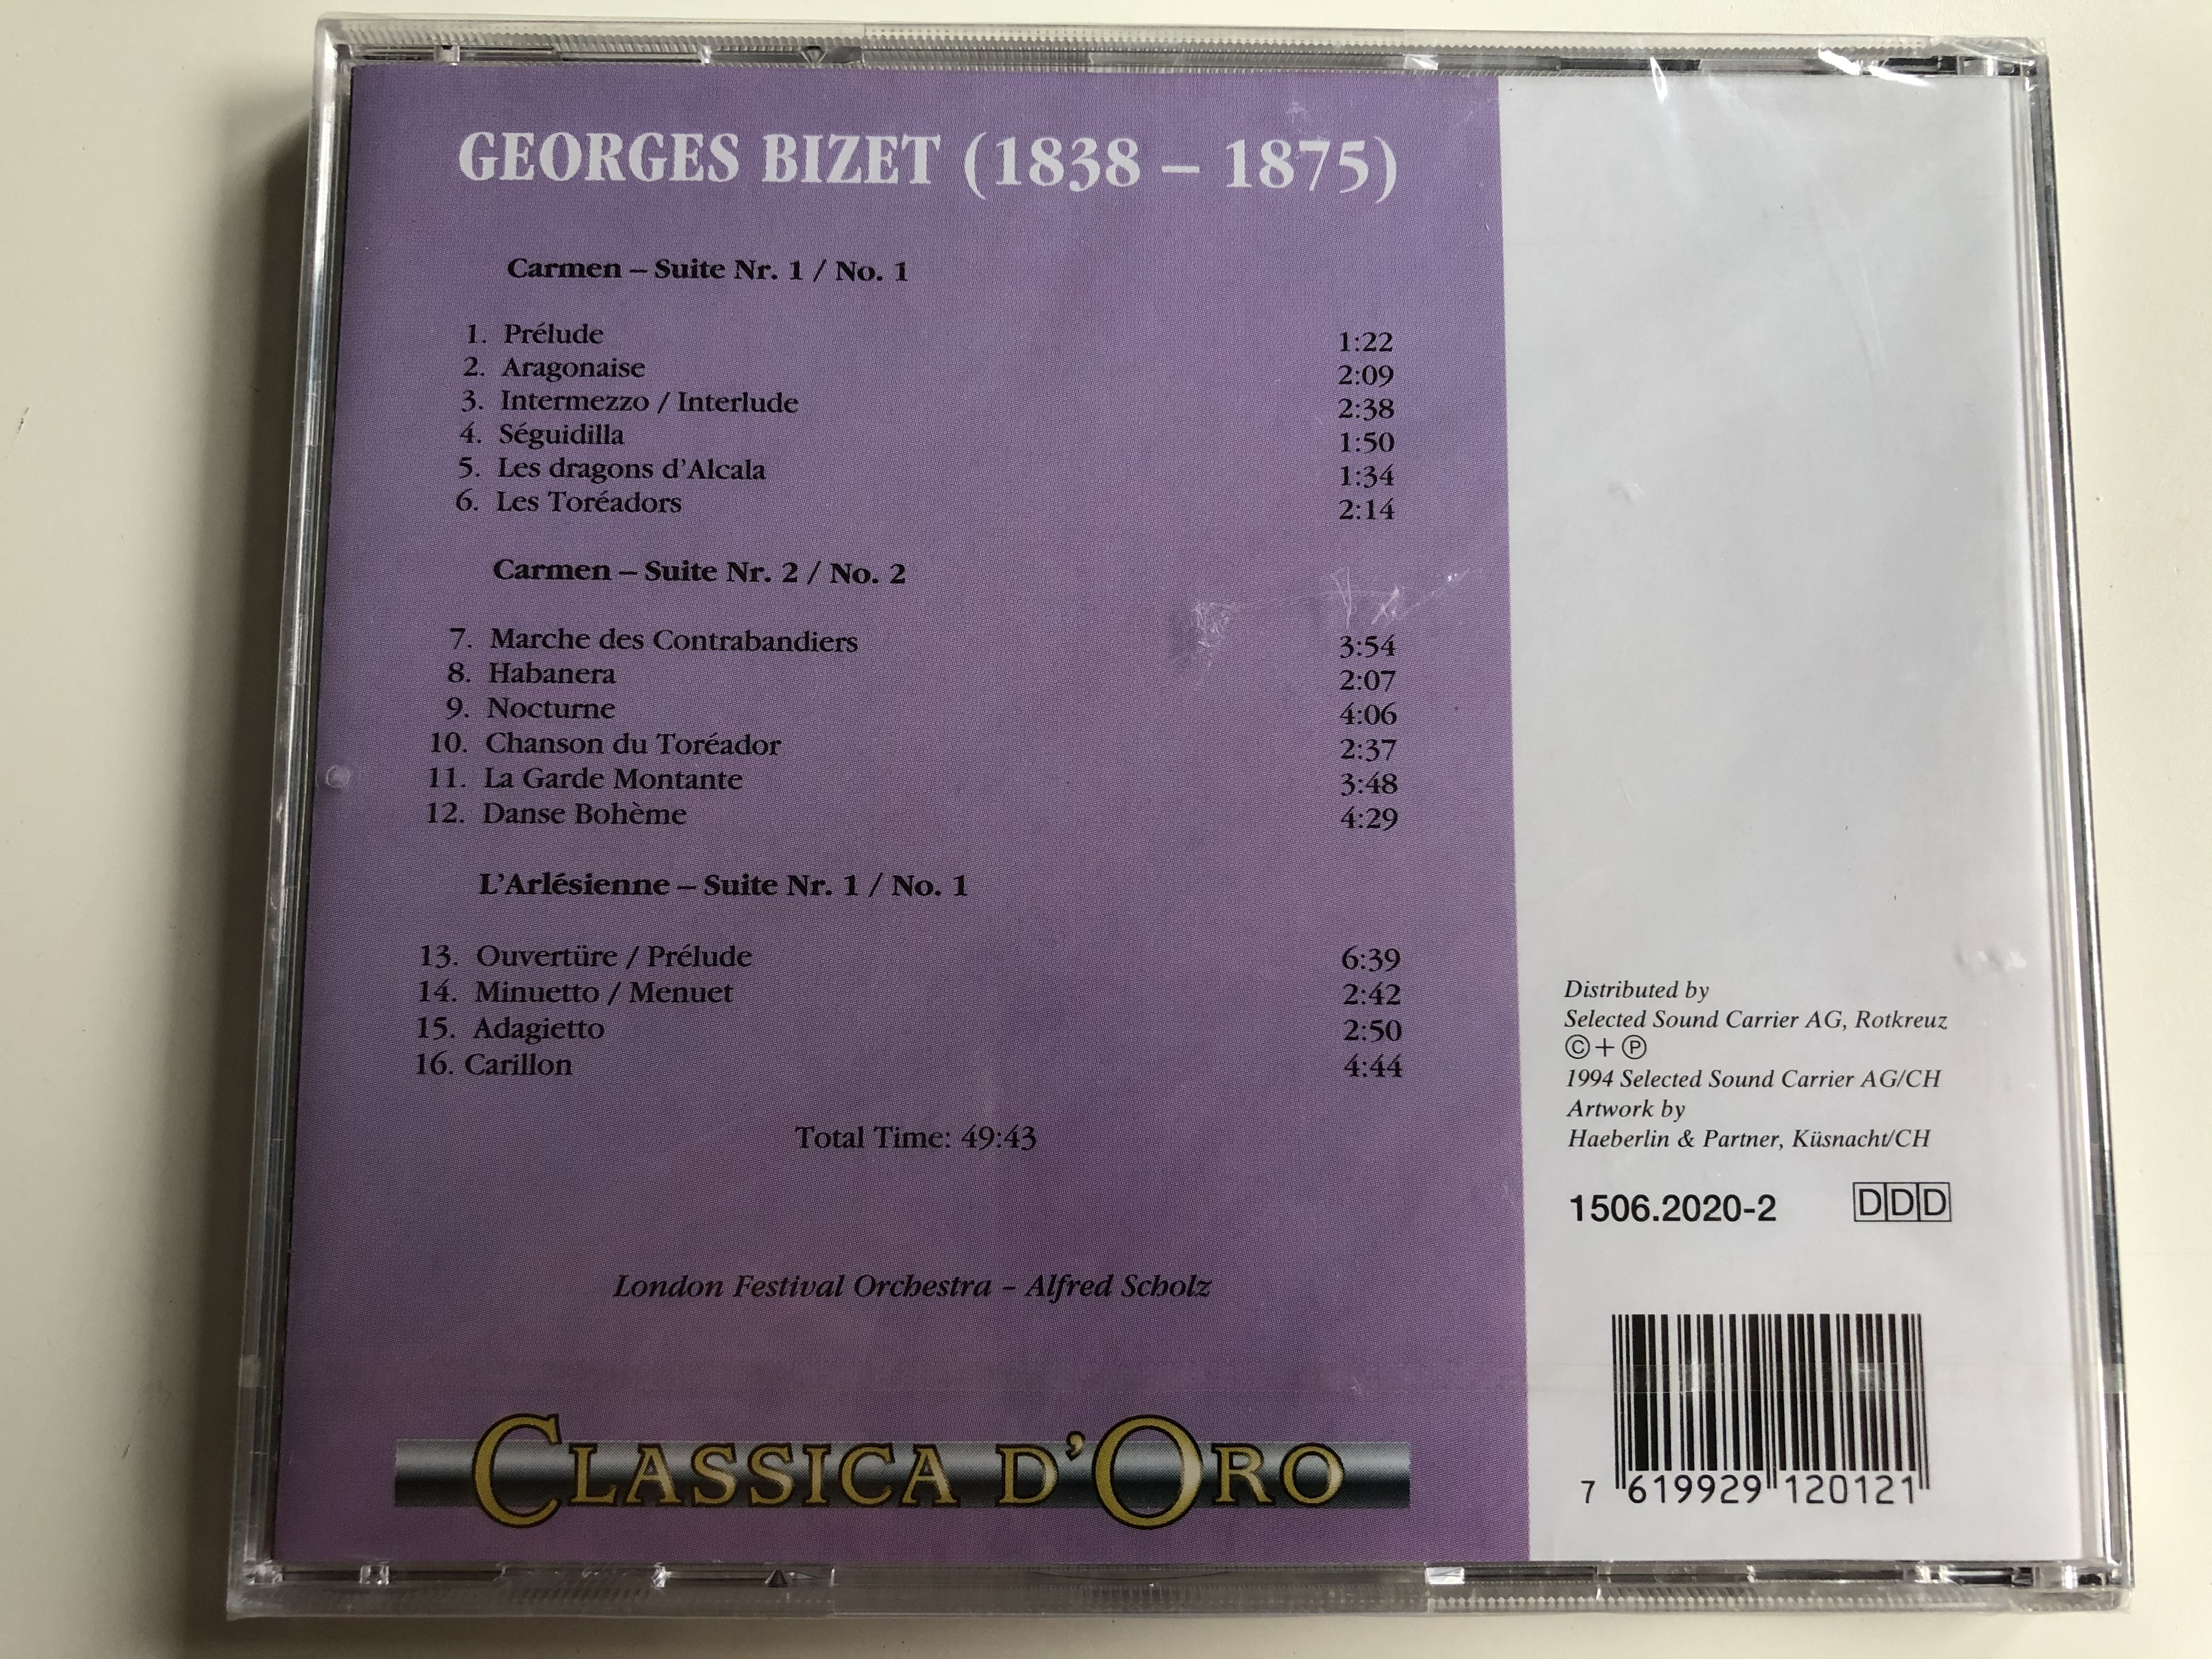 georges-bizet-carmen-suiten-suites-nos.-1-2-l-arlesienne-suite-no.-1-london-festival-orchestra-alfred-scholz-classica-d-oro-audio-cd-1994-1506-2-.jpg